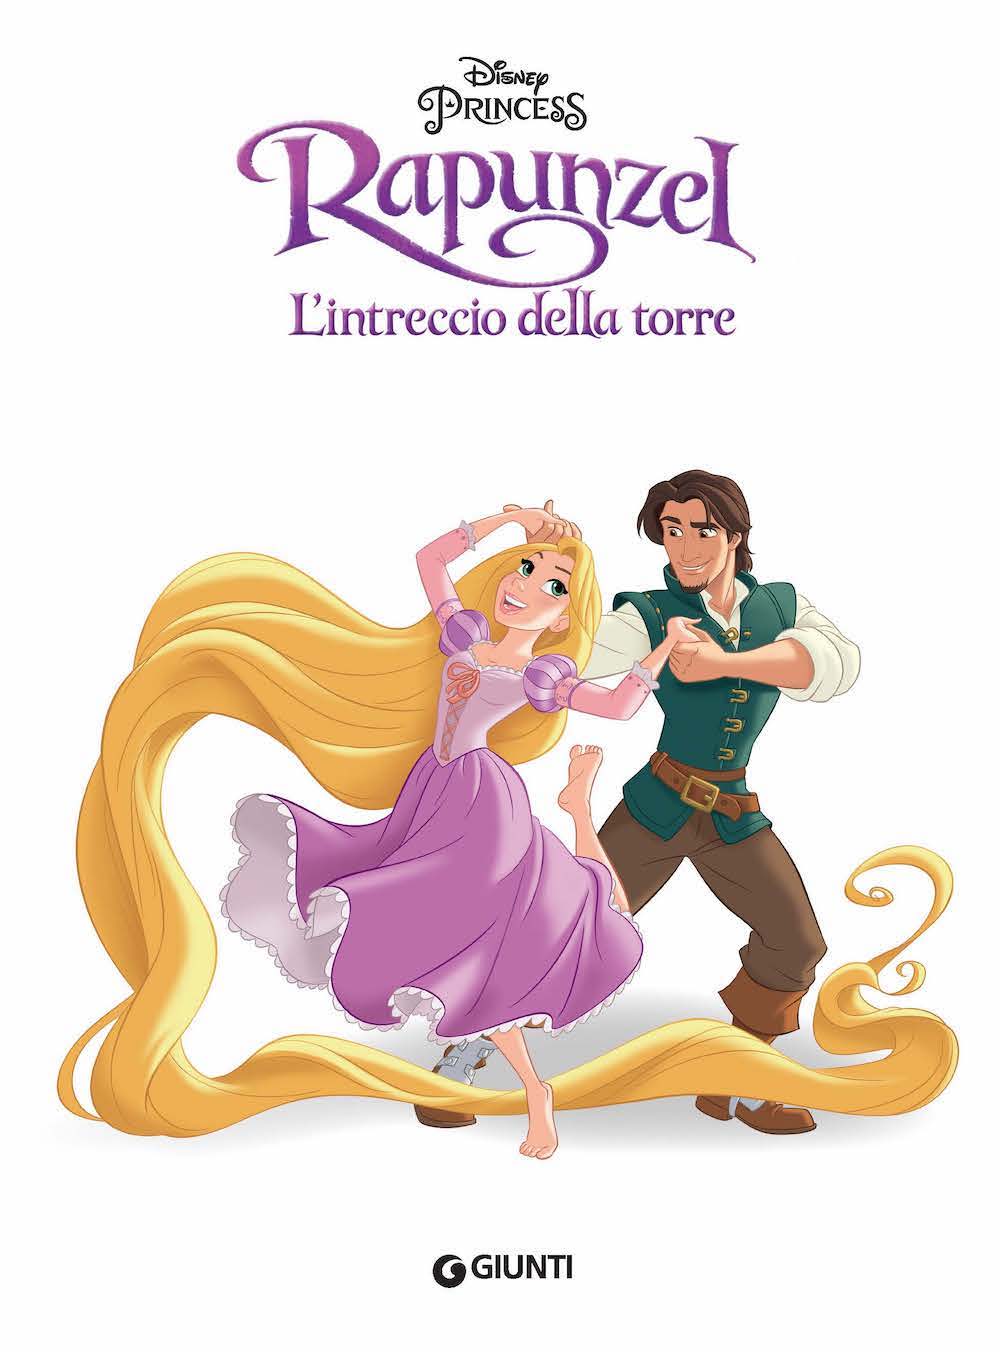 Disney Princess - Classics Collection. Le storie più belle - Rapunzel, La Sirenetta, La Bella e la Bestia